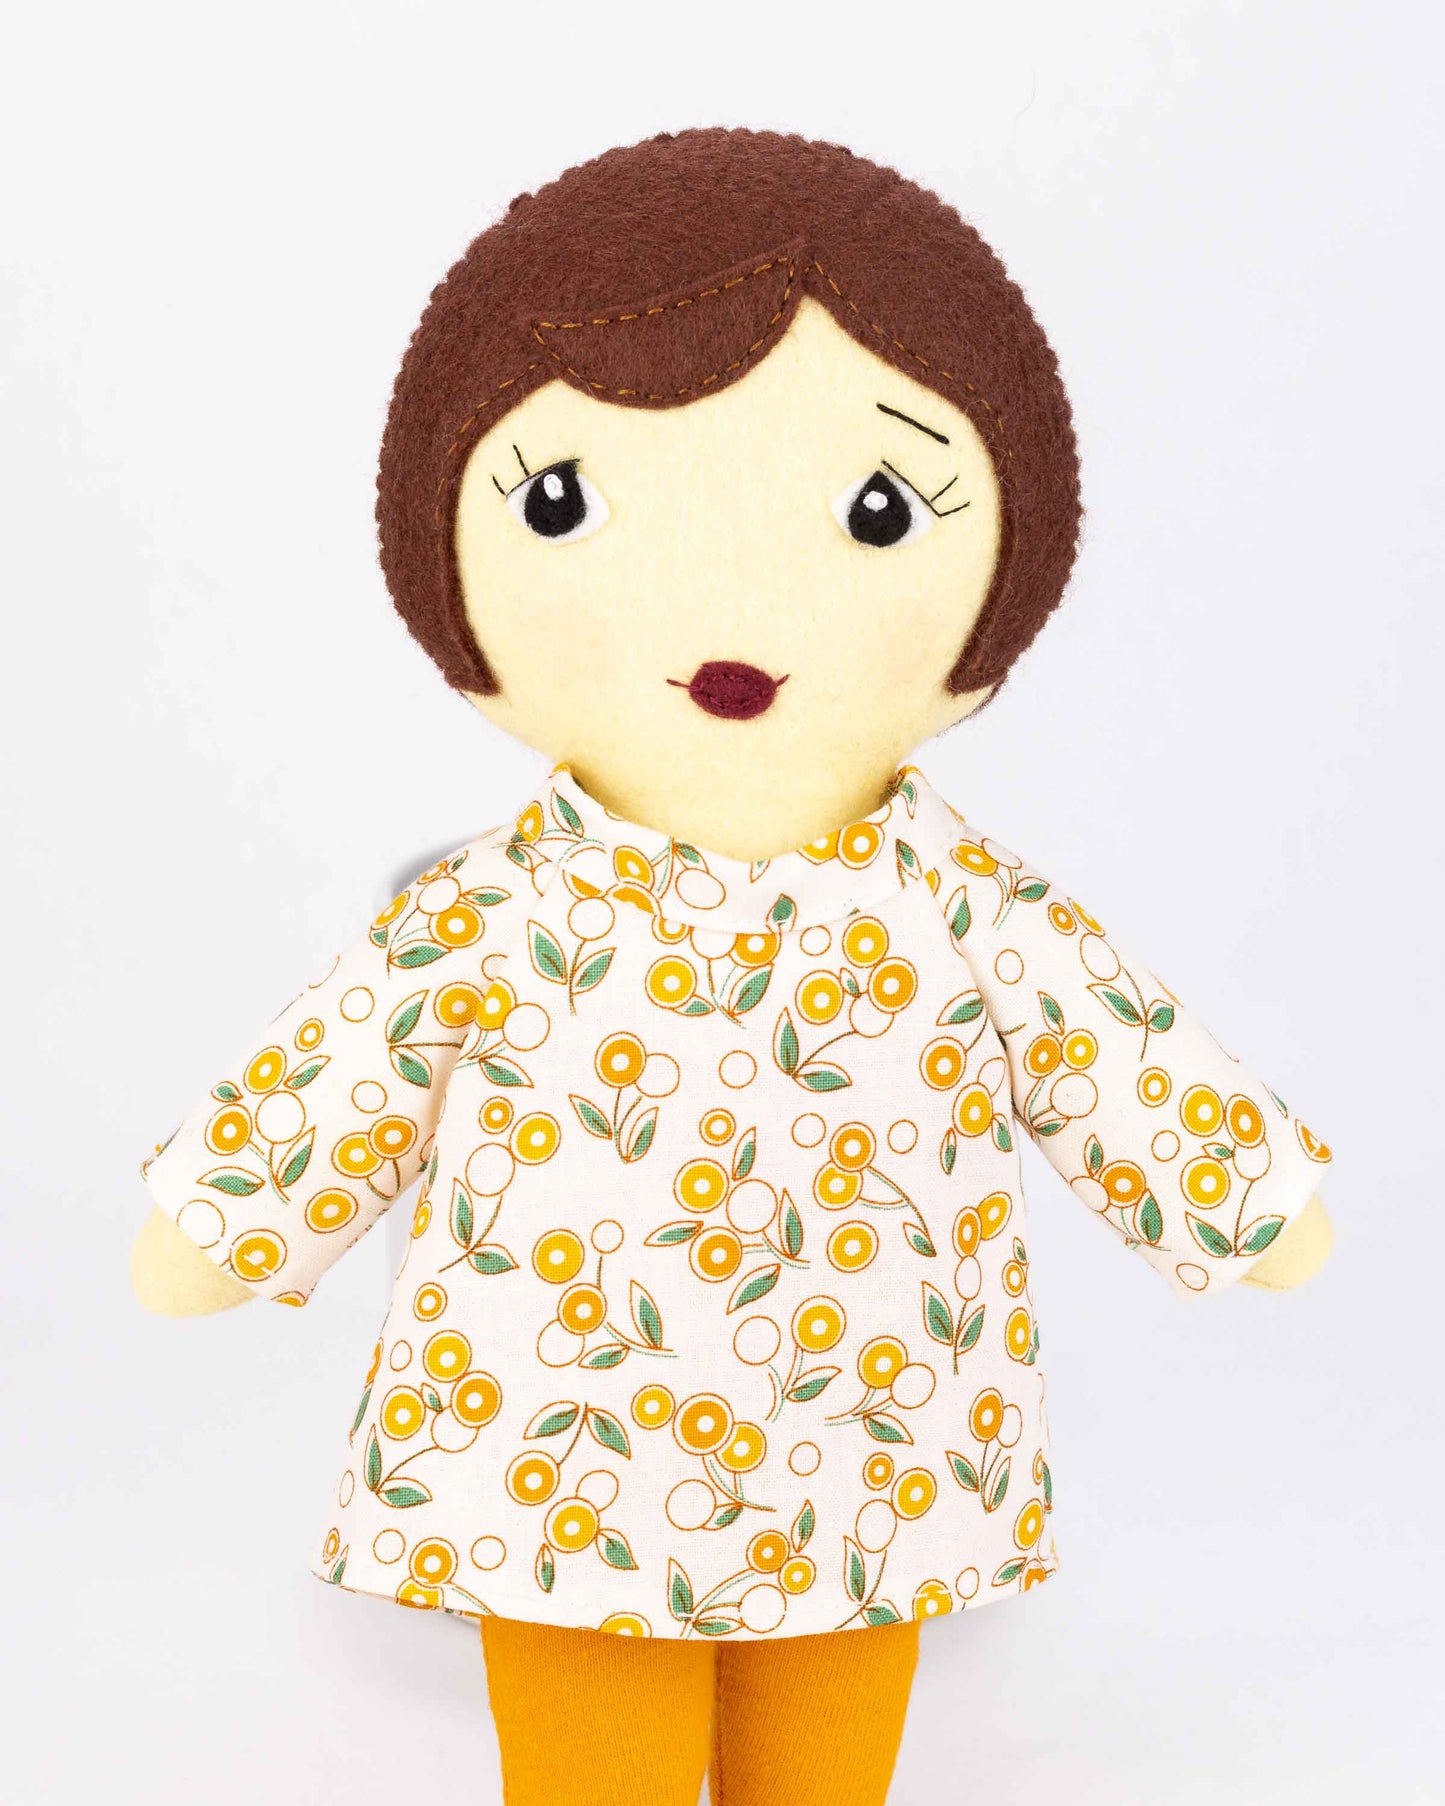 Daisy Felt Doll Sewing Pattern